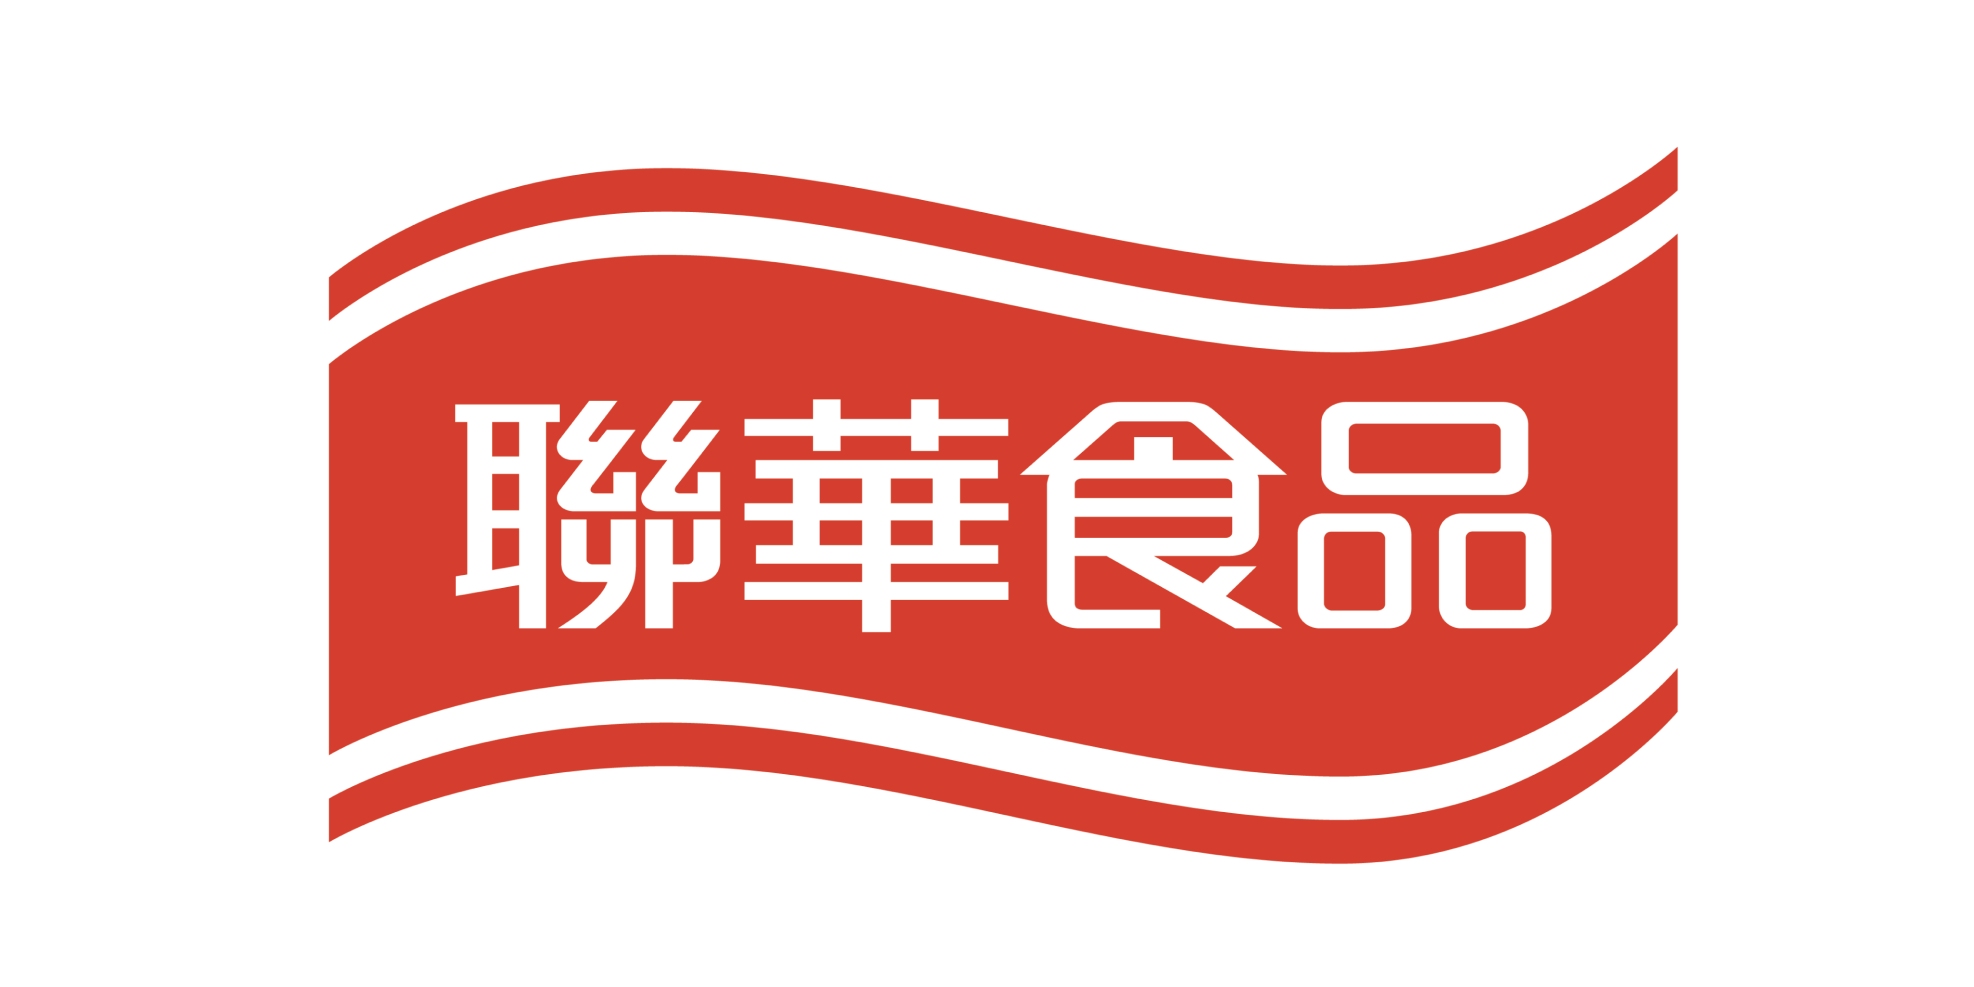 聯華 02 | 聯華食品企業識別形象更新專案 | Labsology 法博思品牌顧問公司